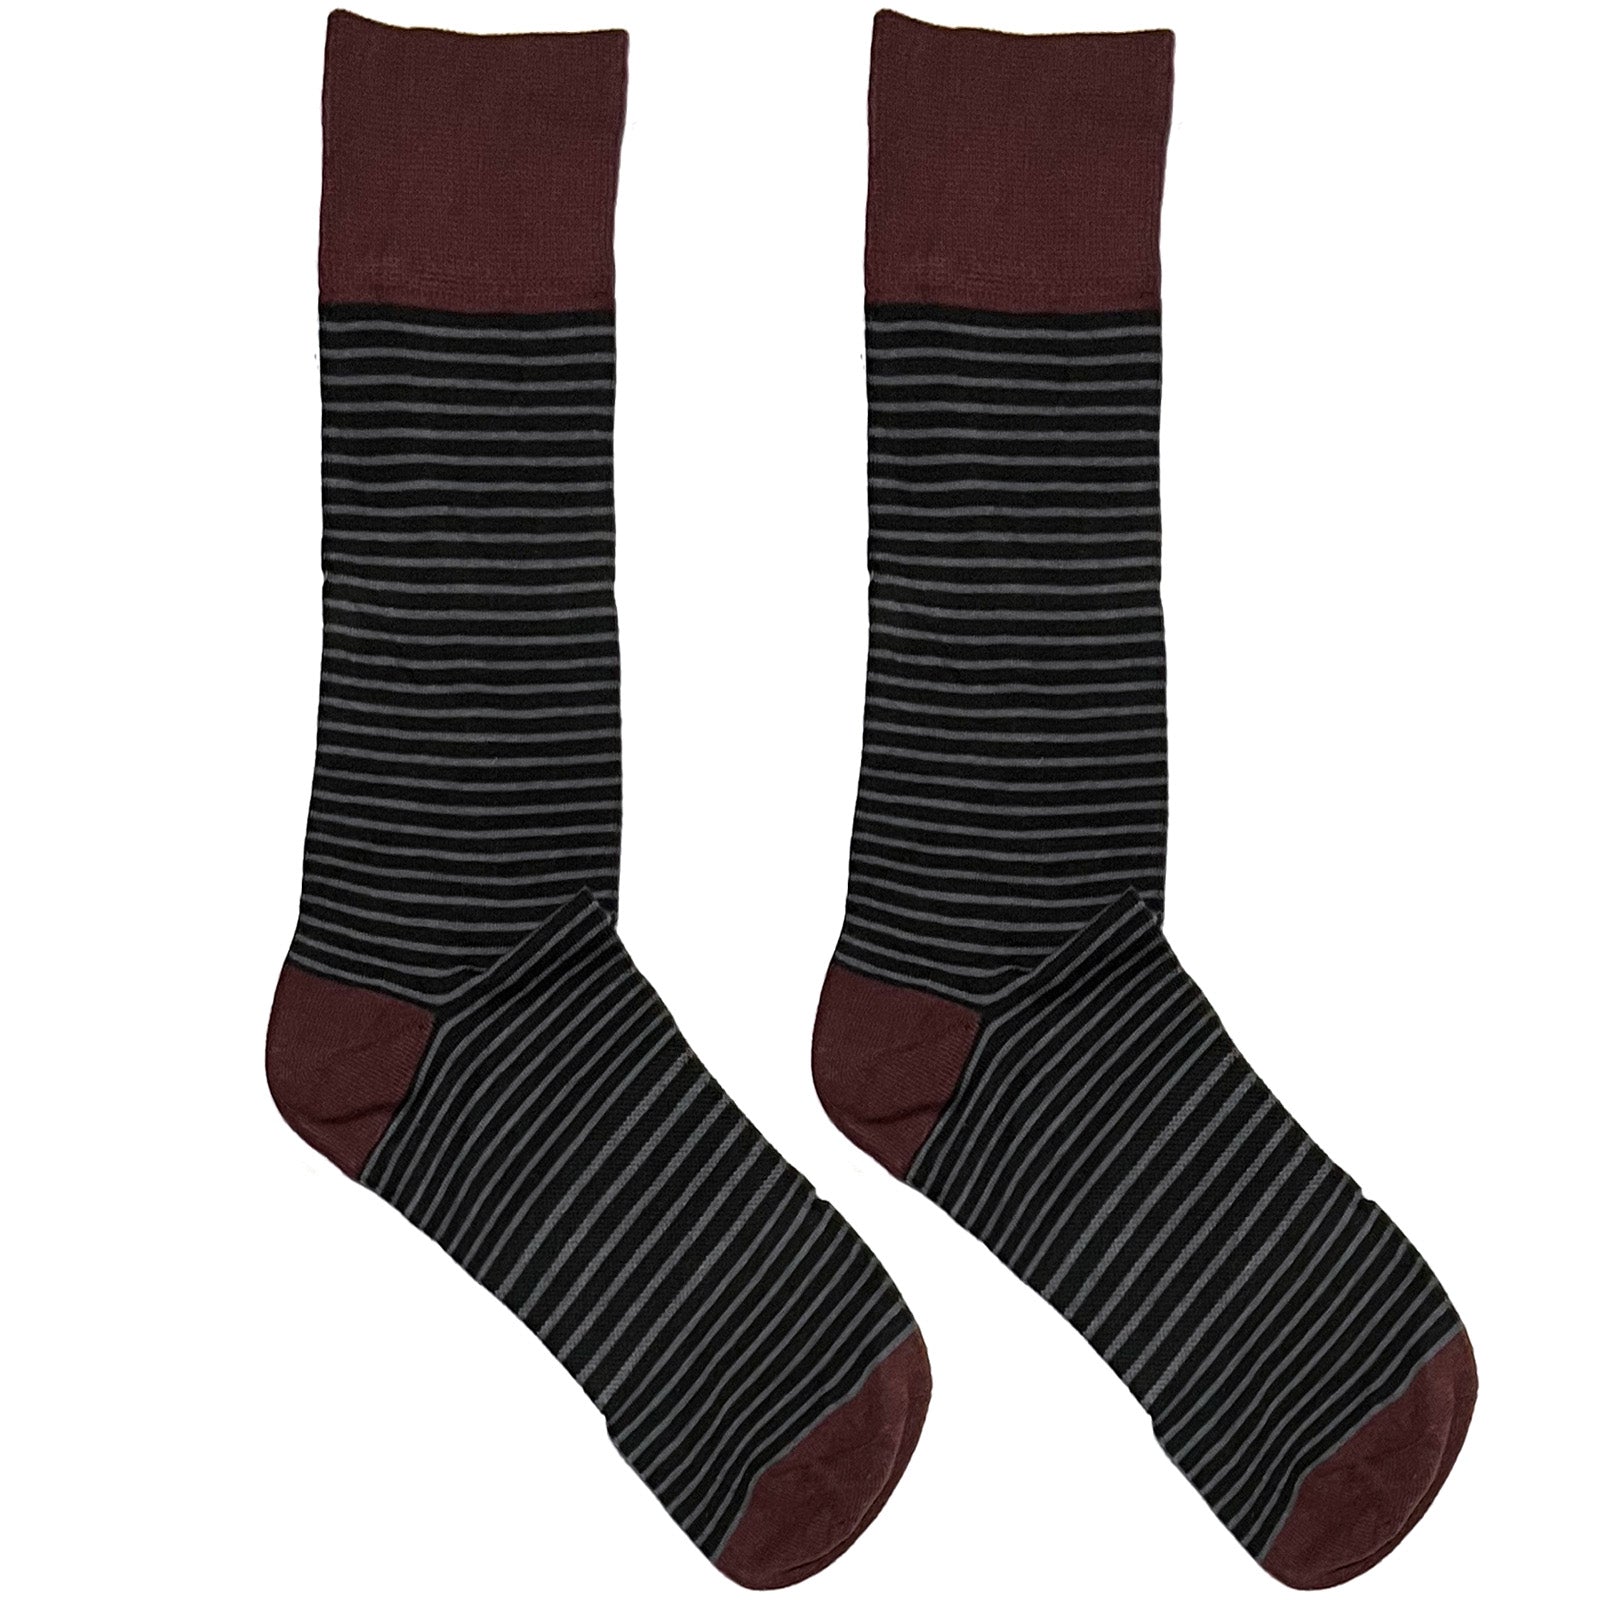 Maroon And Black Stripes Socks